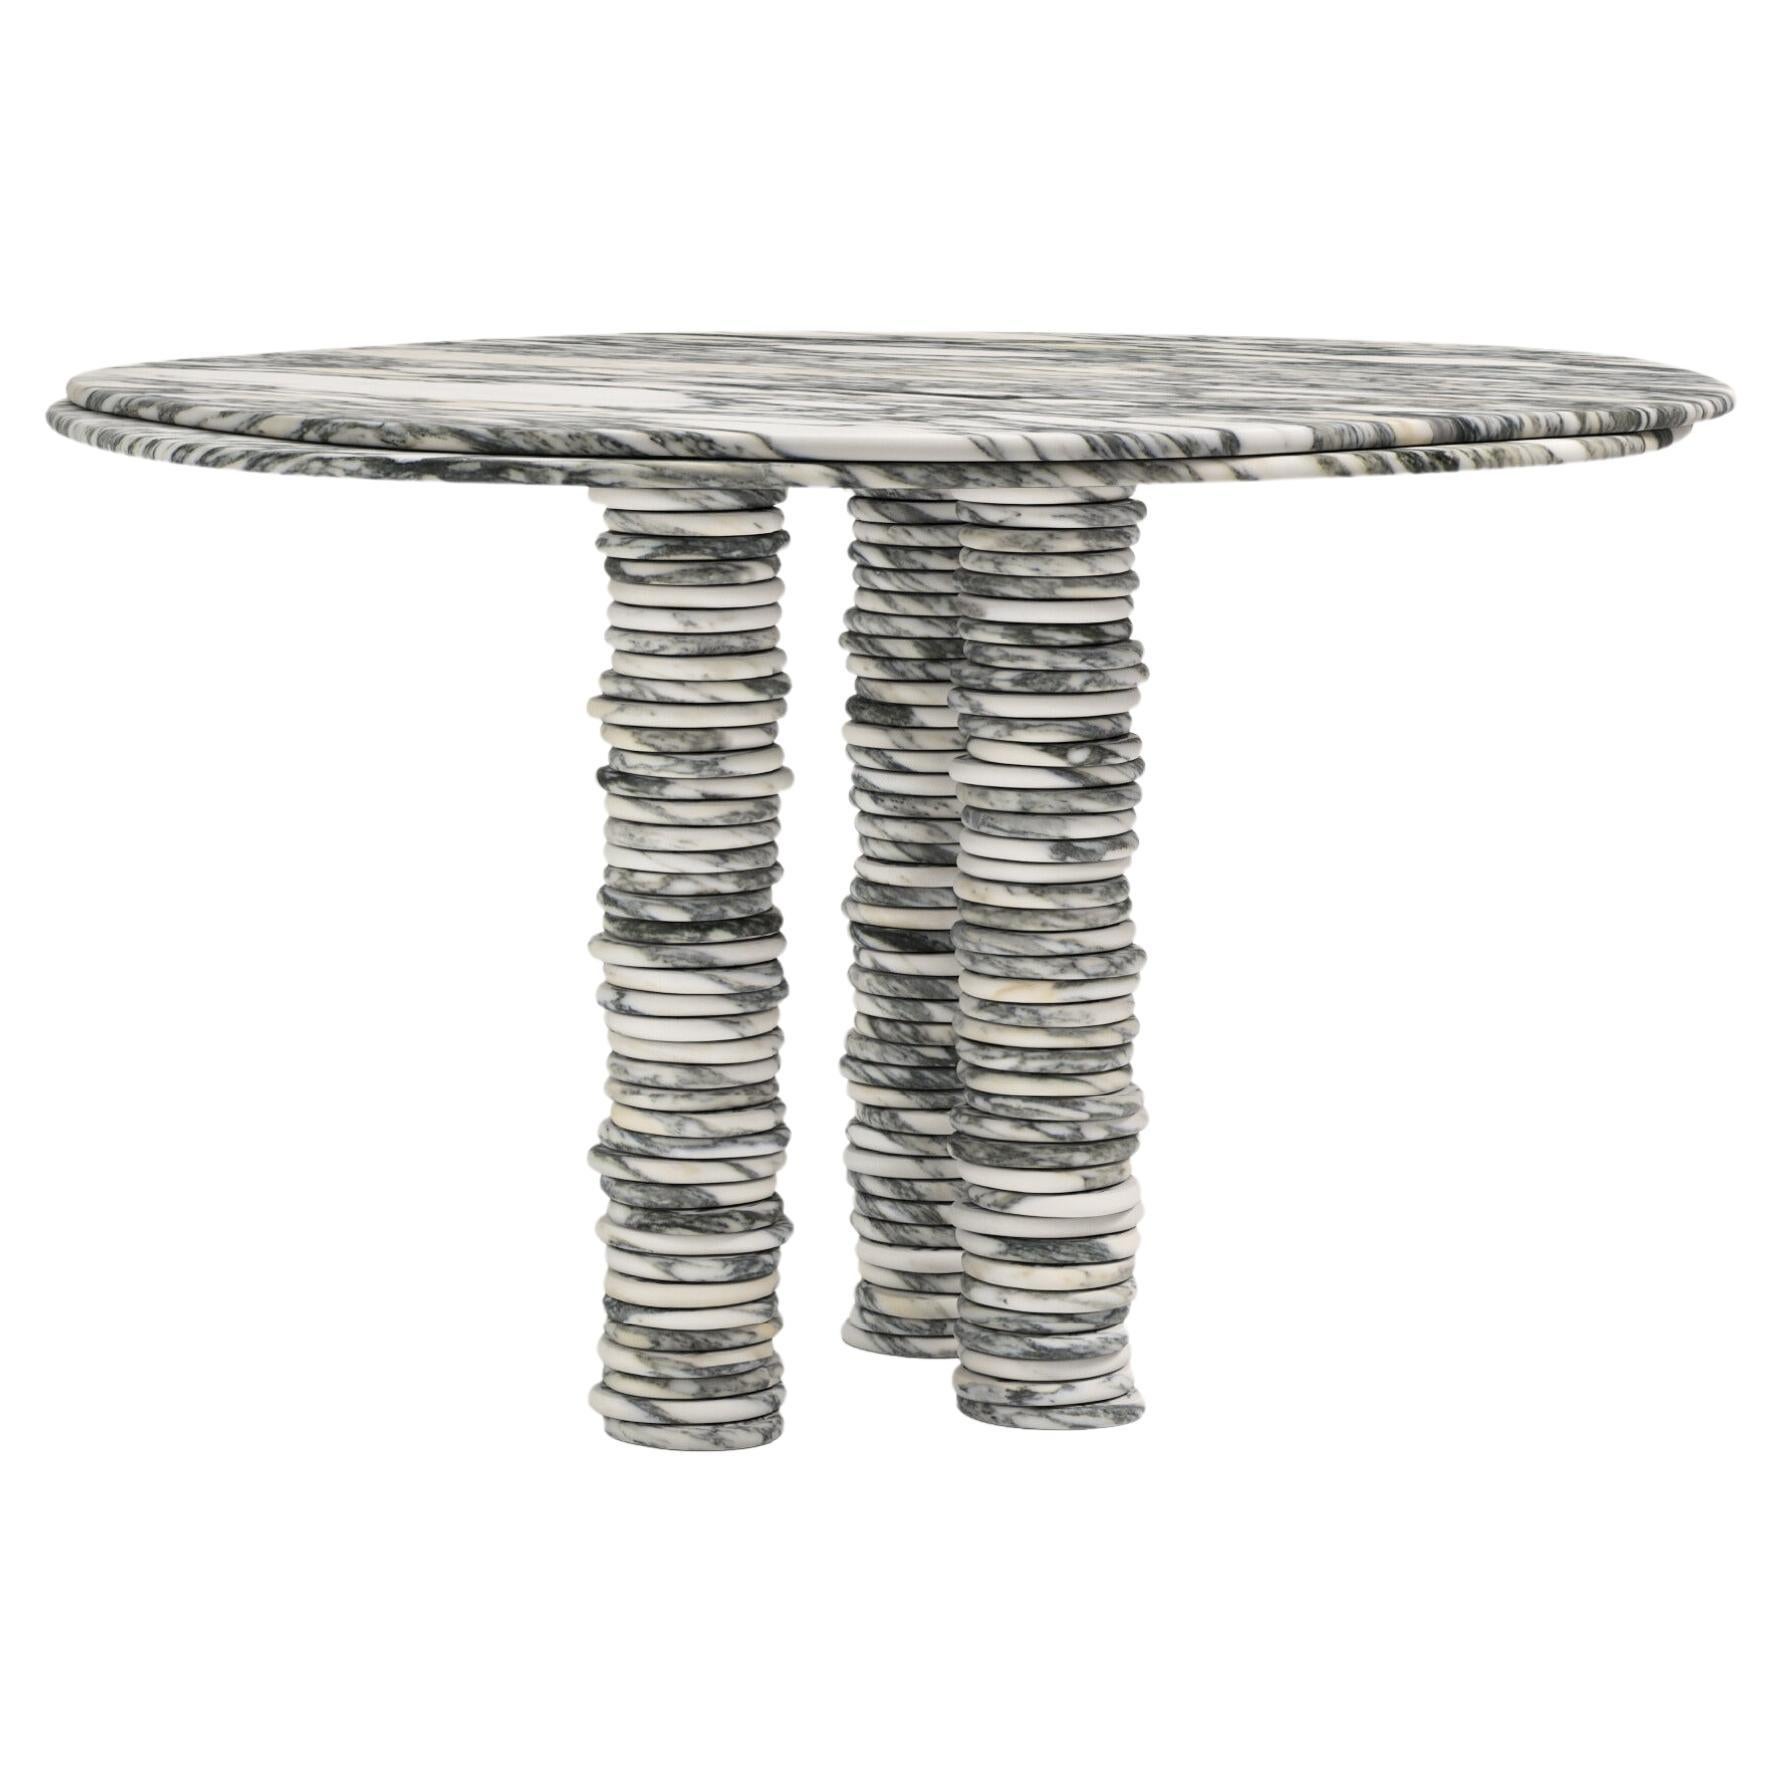 FORM(LA) Onda Round Dining Table 42”L x 42”W x 29”H Arabescato Corchia Marble For Sale